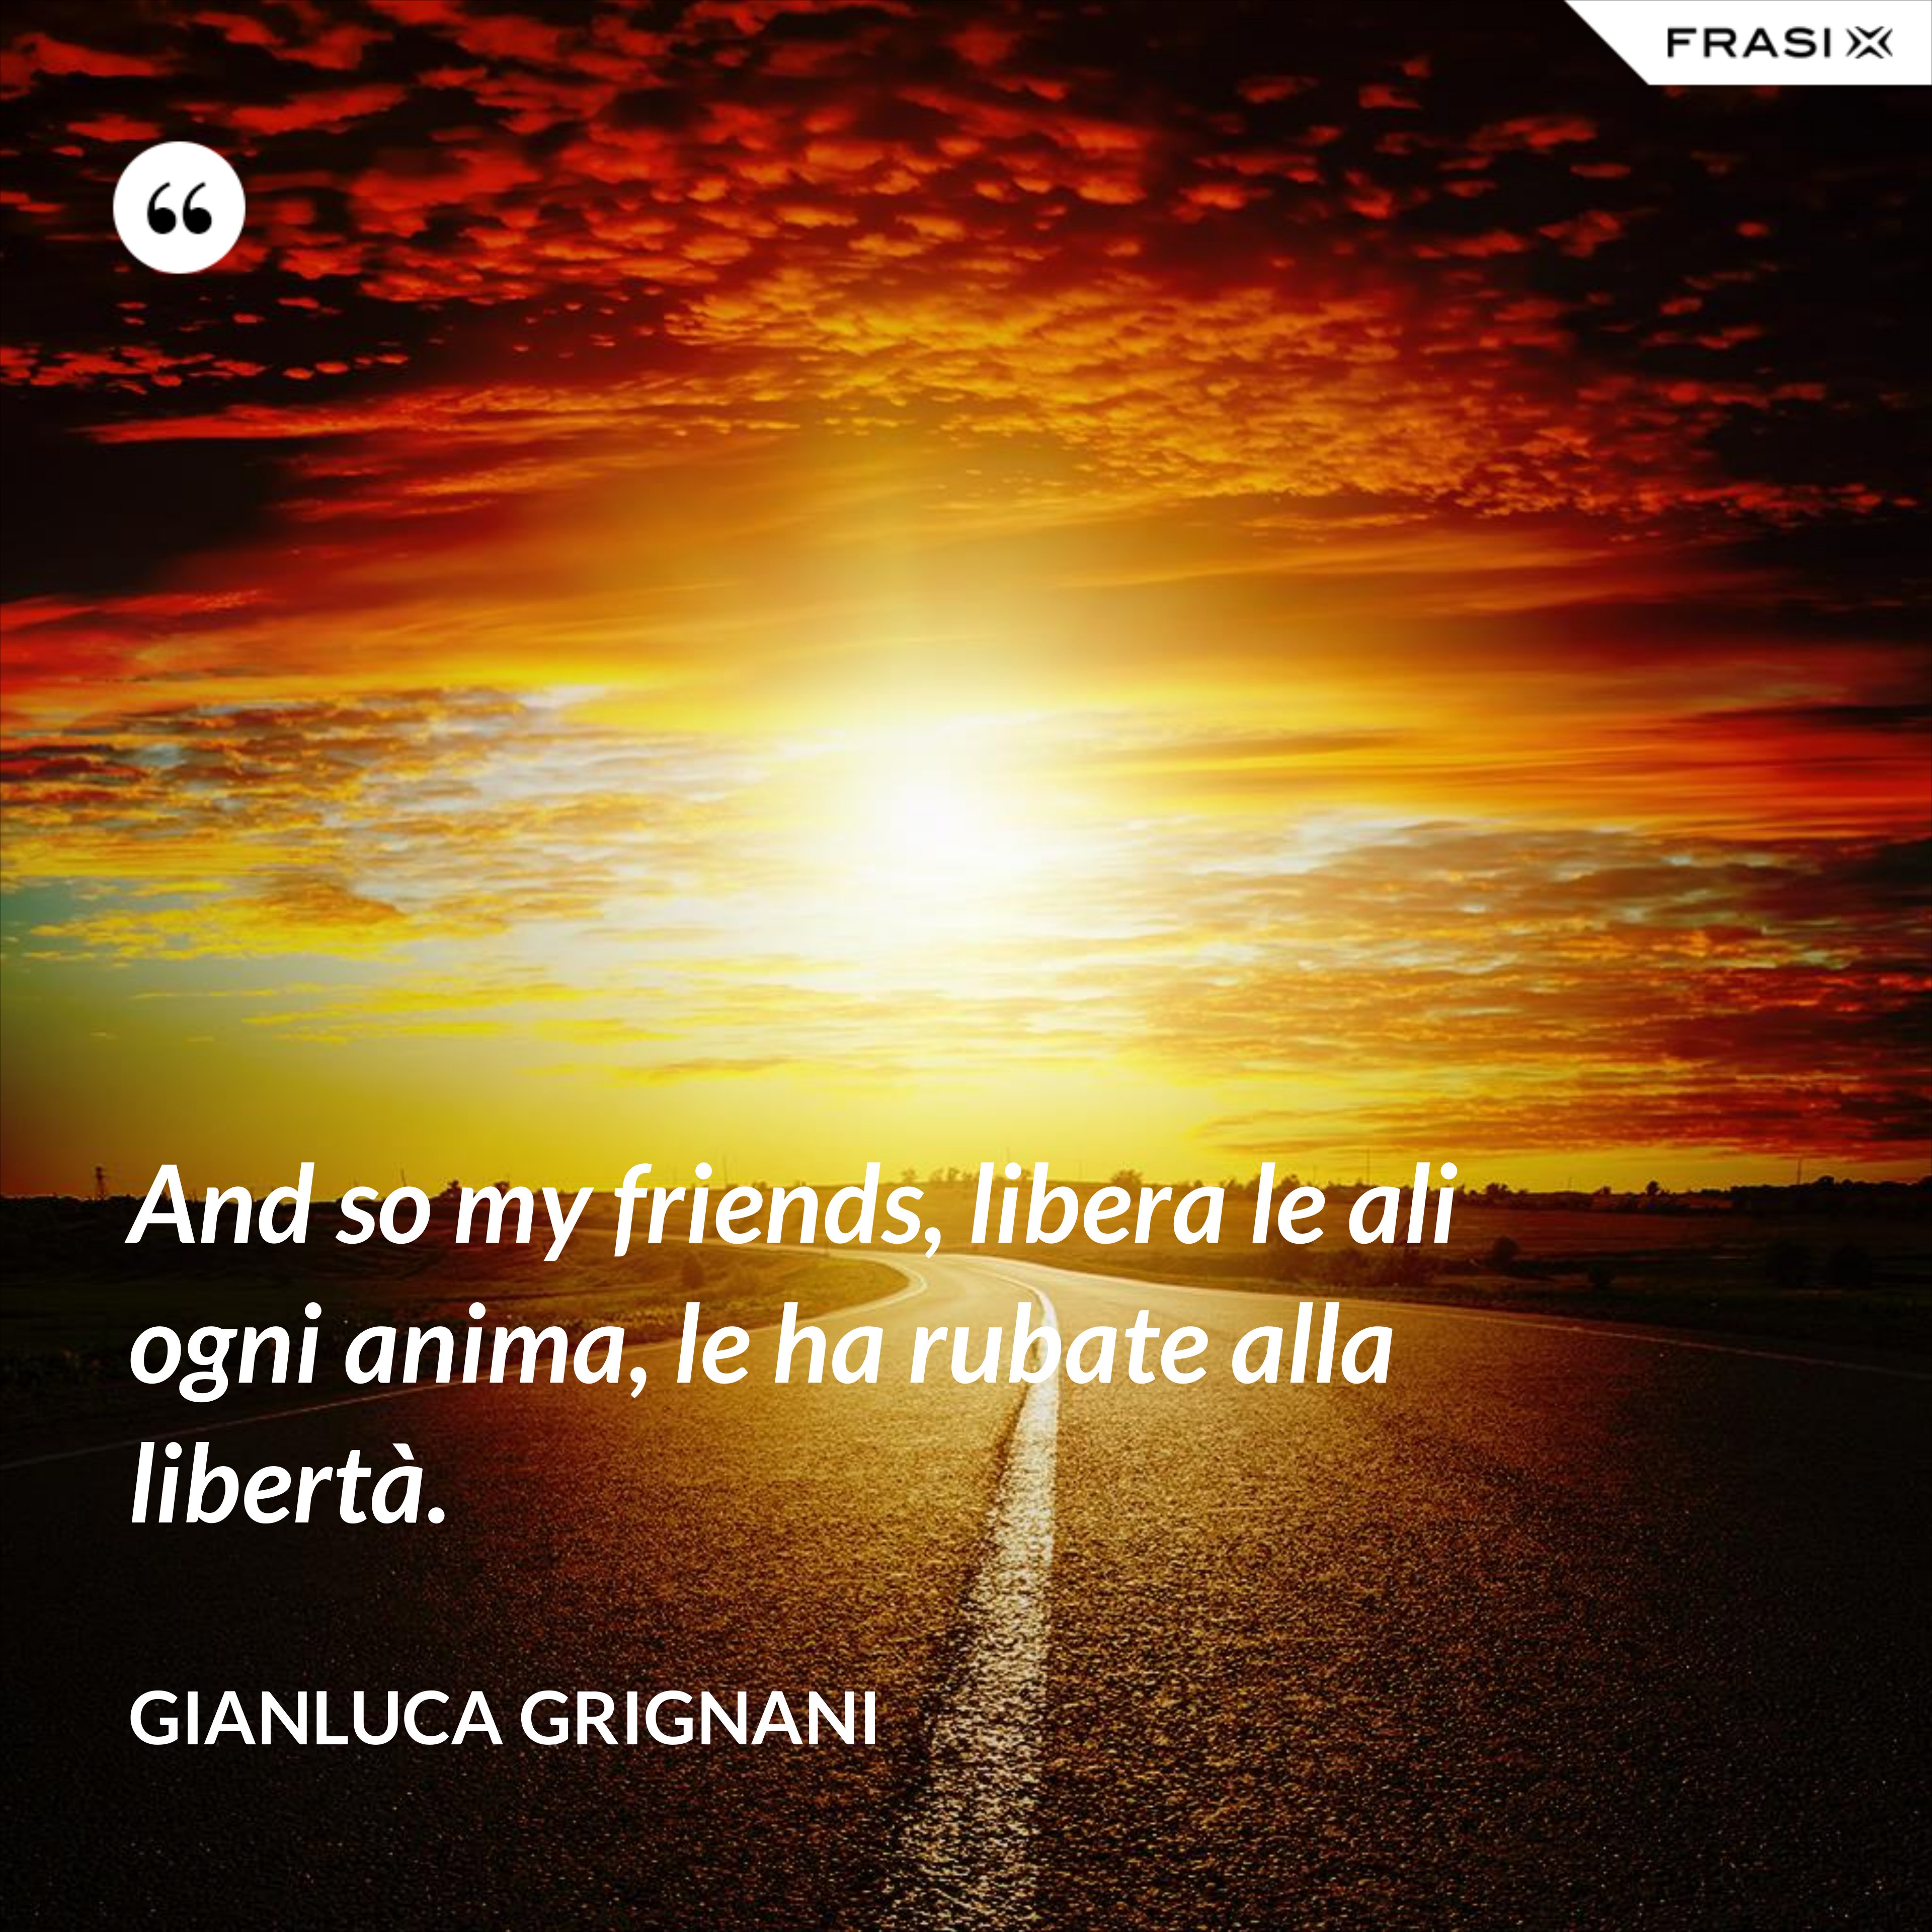 And so my friends, libera le ali ogni anima, le ha rubate alla libertà. - Gianluca Grignani